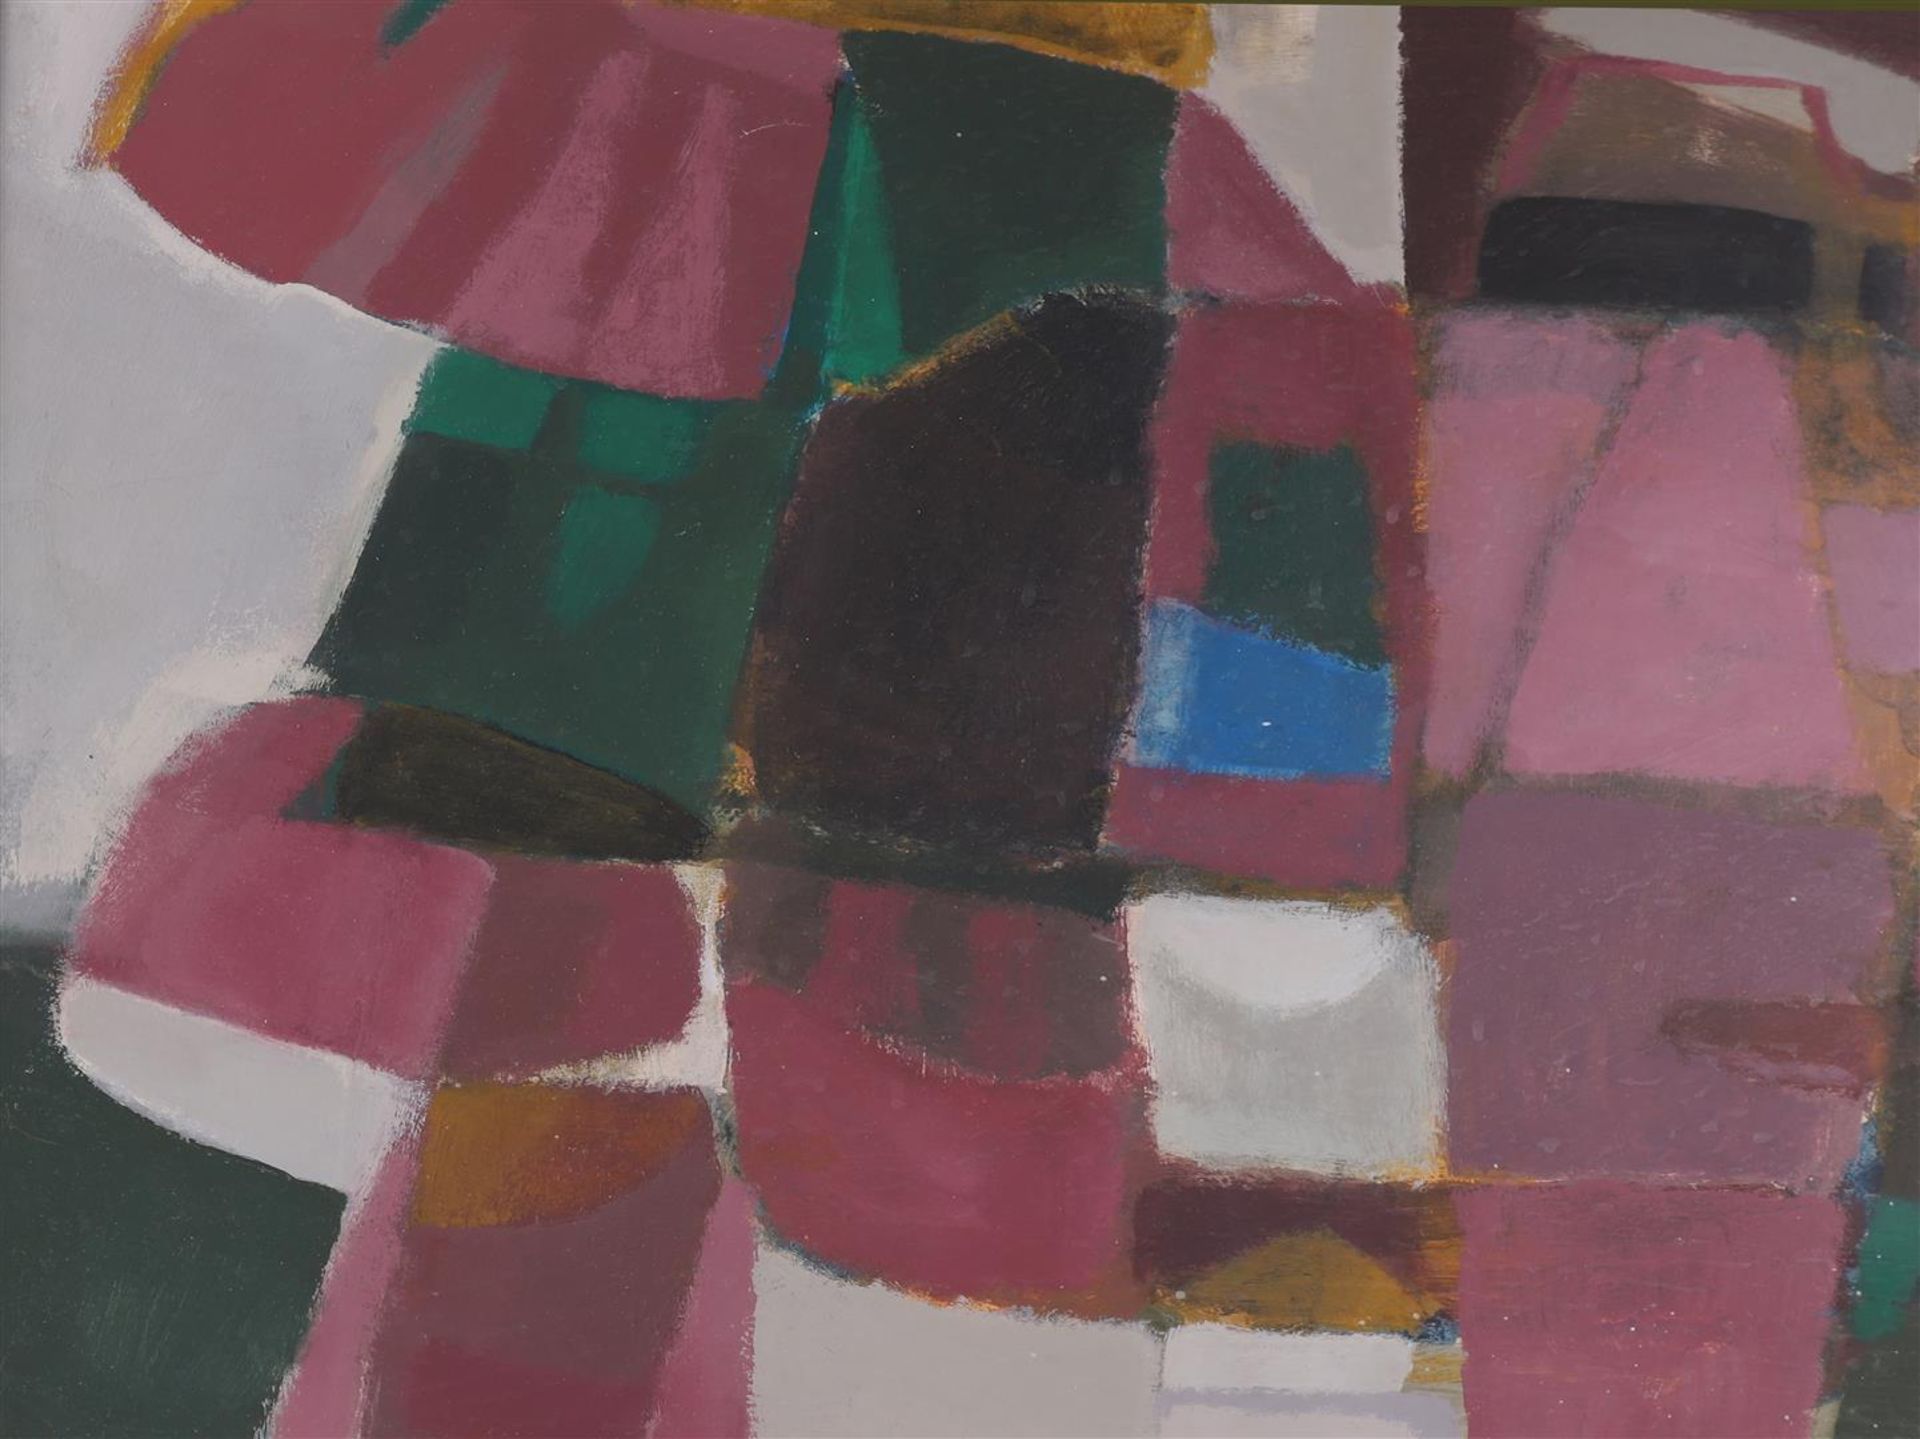 Dijk, van Jo (1931-1999) “Composition”, 1974. - Image 3 of 6